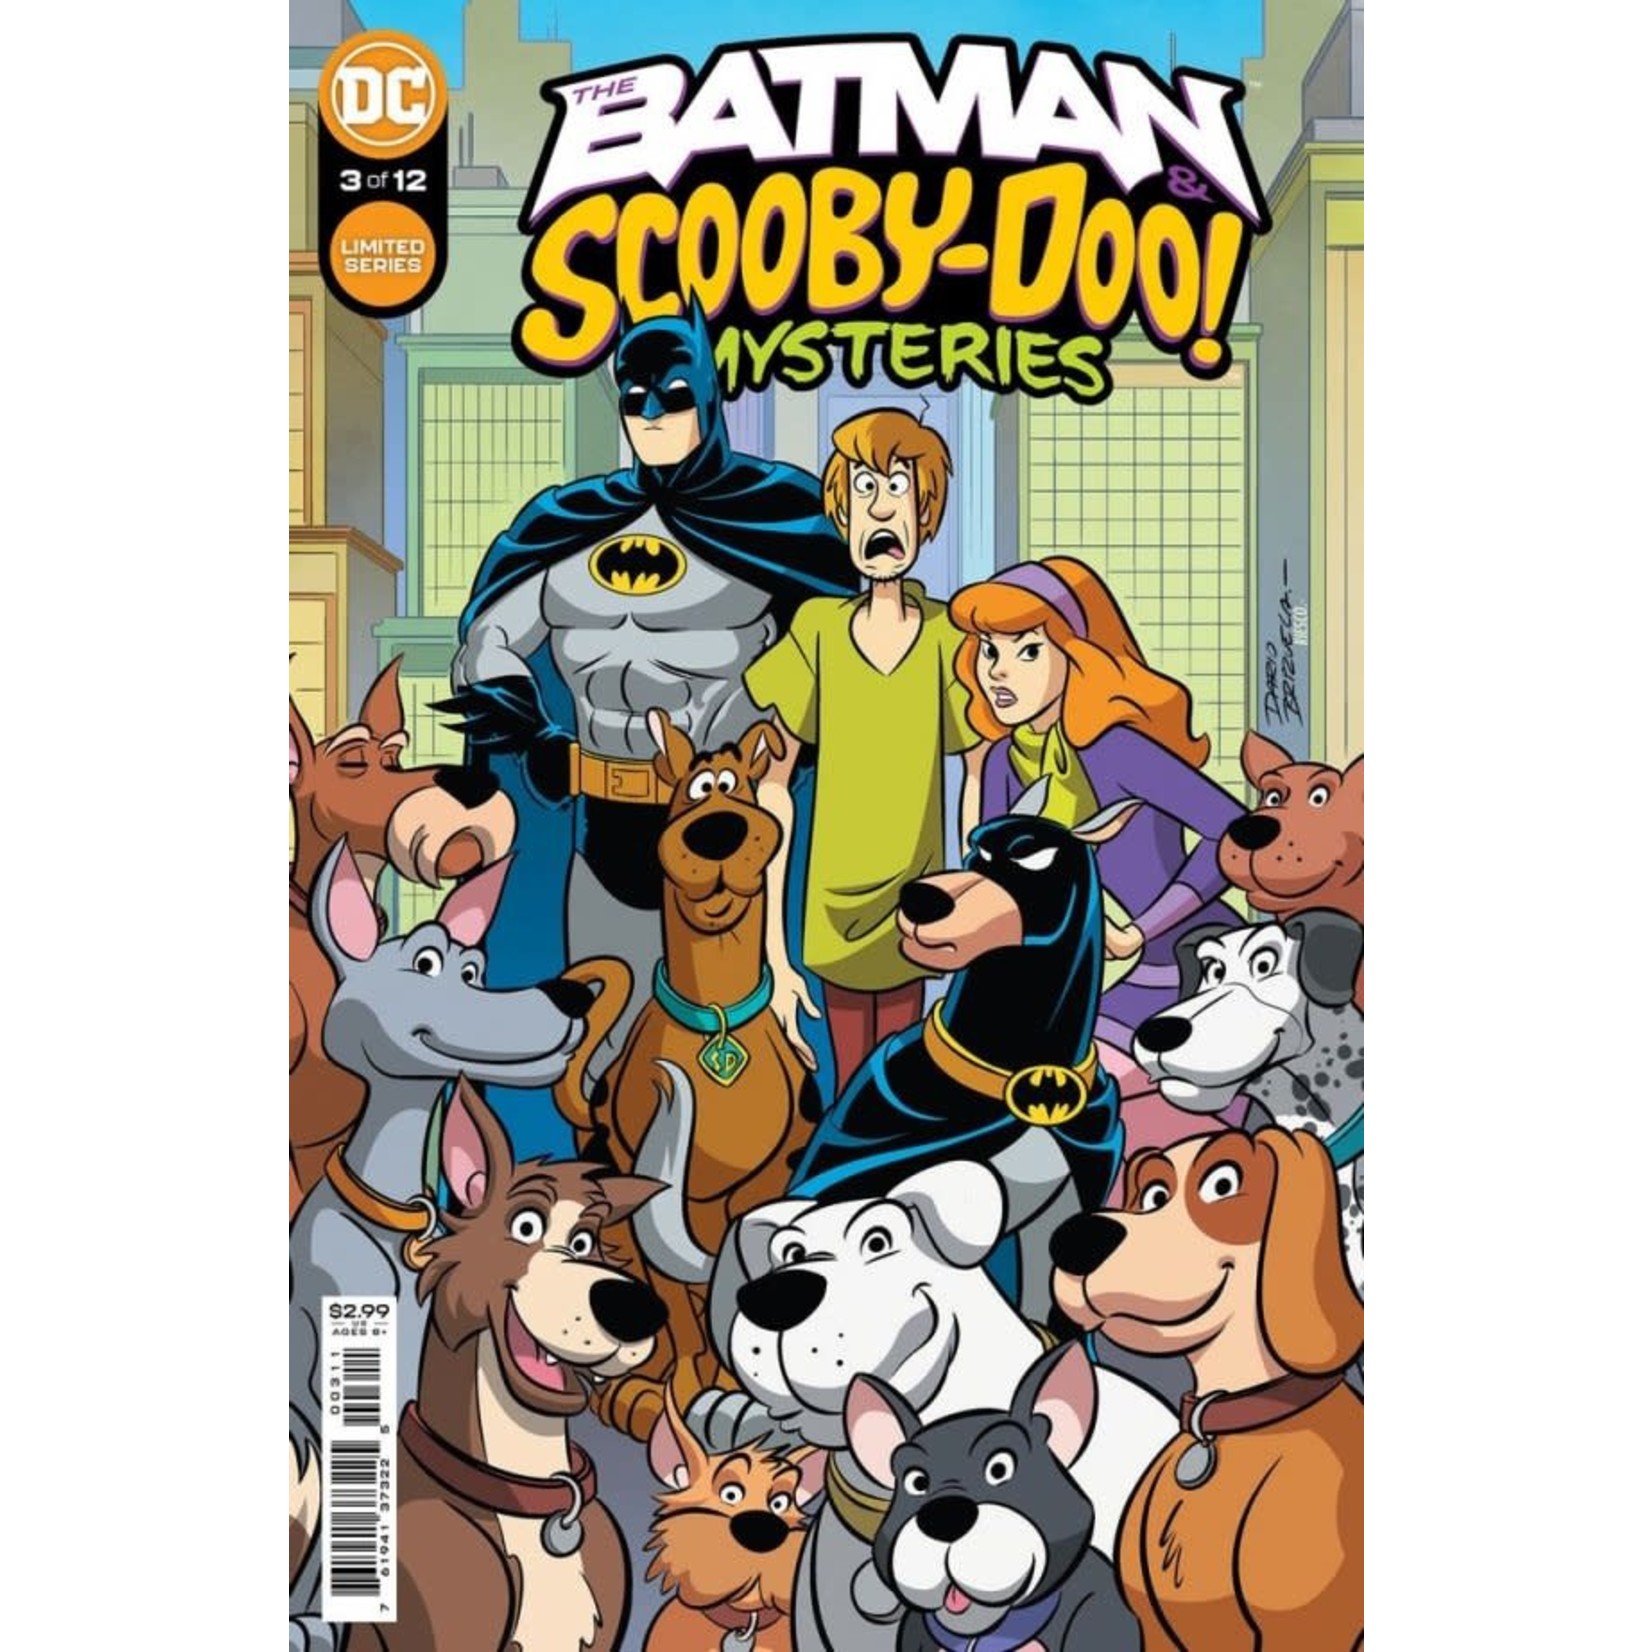 DC Comics BATMAN & SCOOBY-DOO MYSTERIES #3